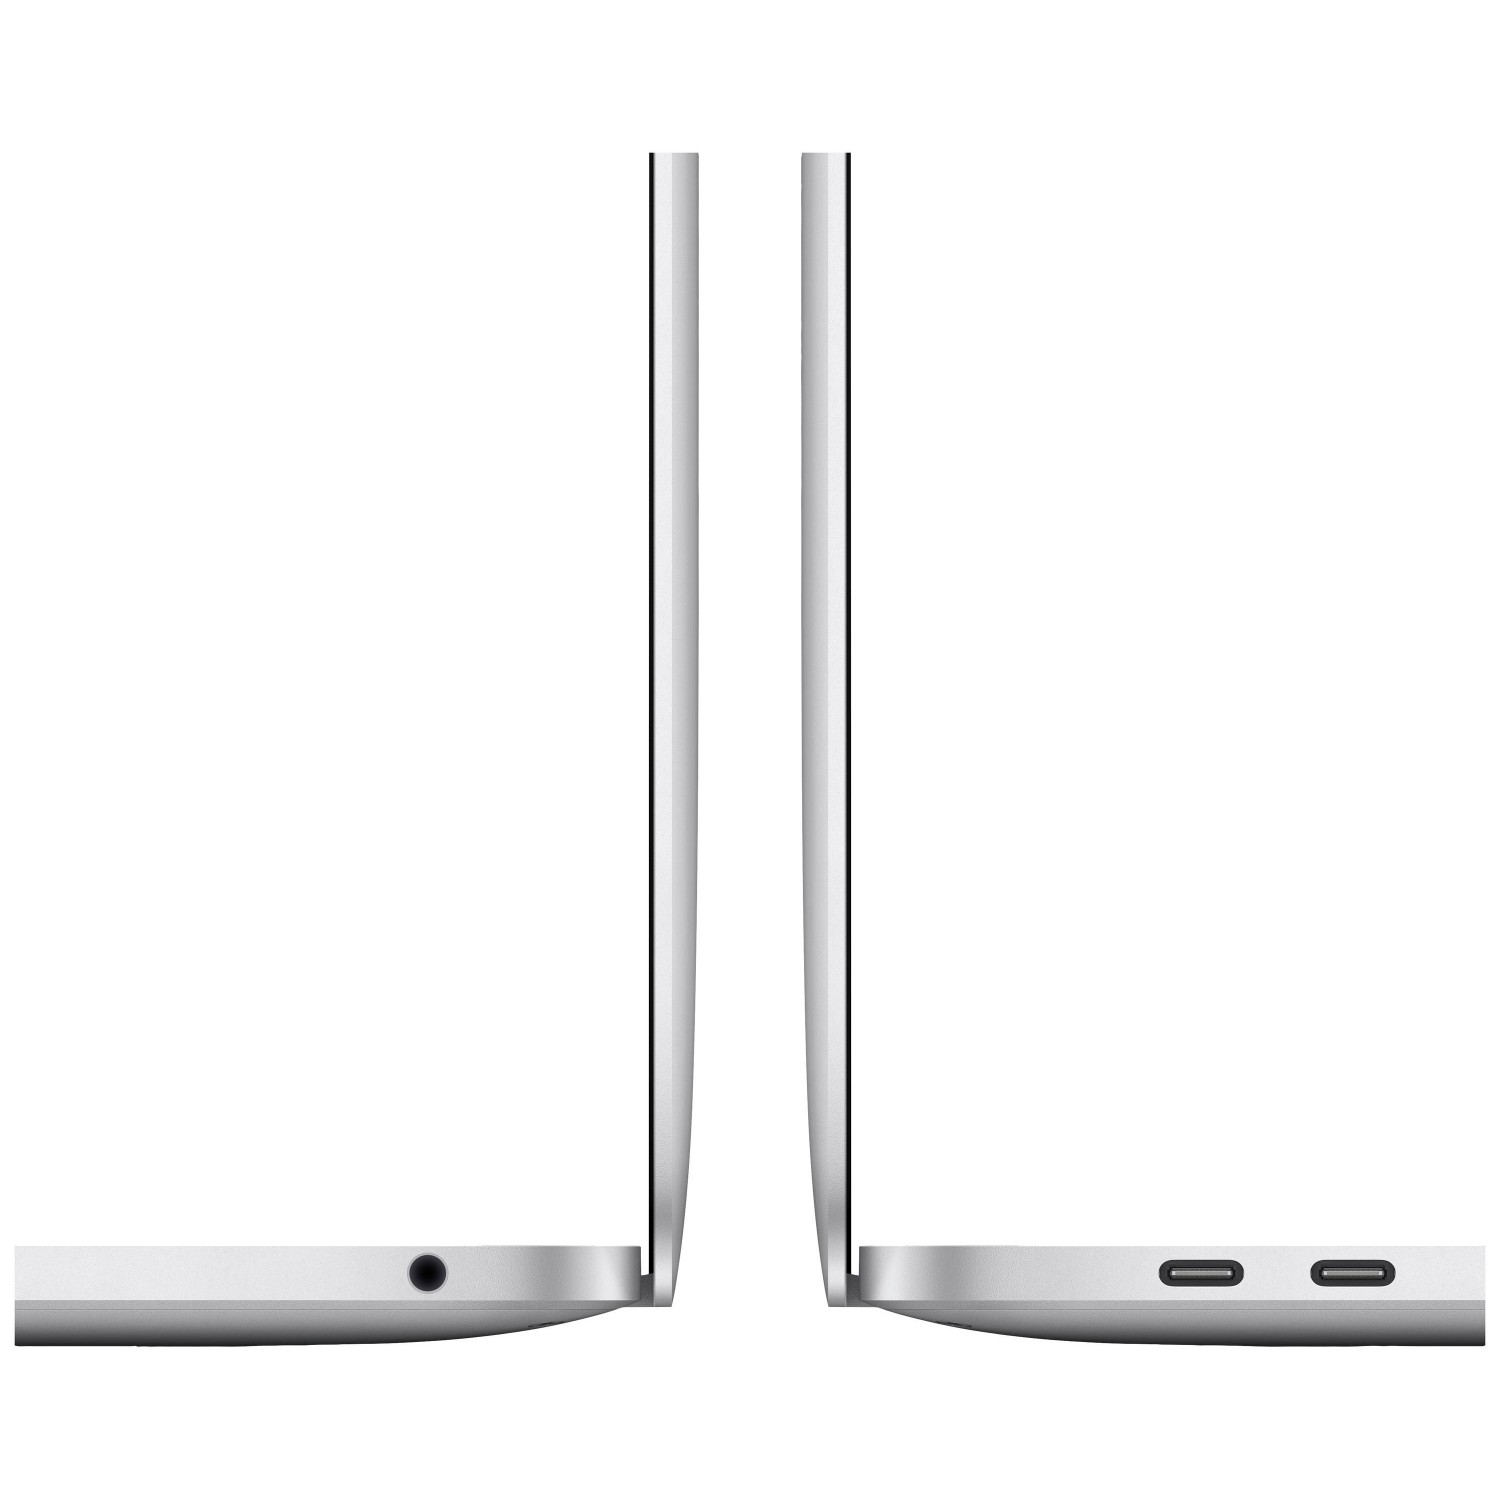 لپ تاپ Apple MacBook Pro 13 2020 CTO - Silver - E-3